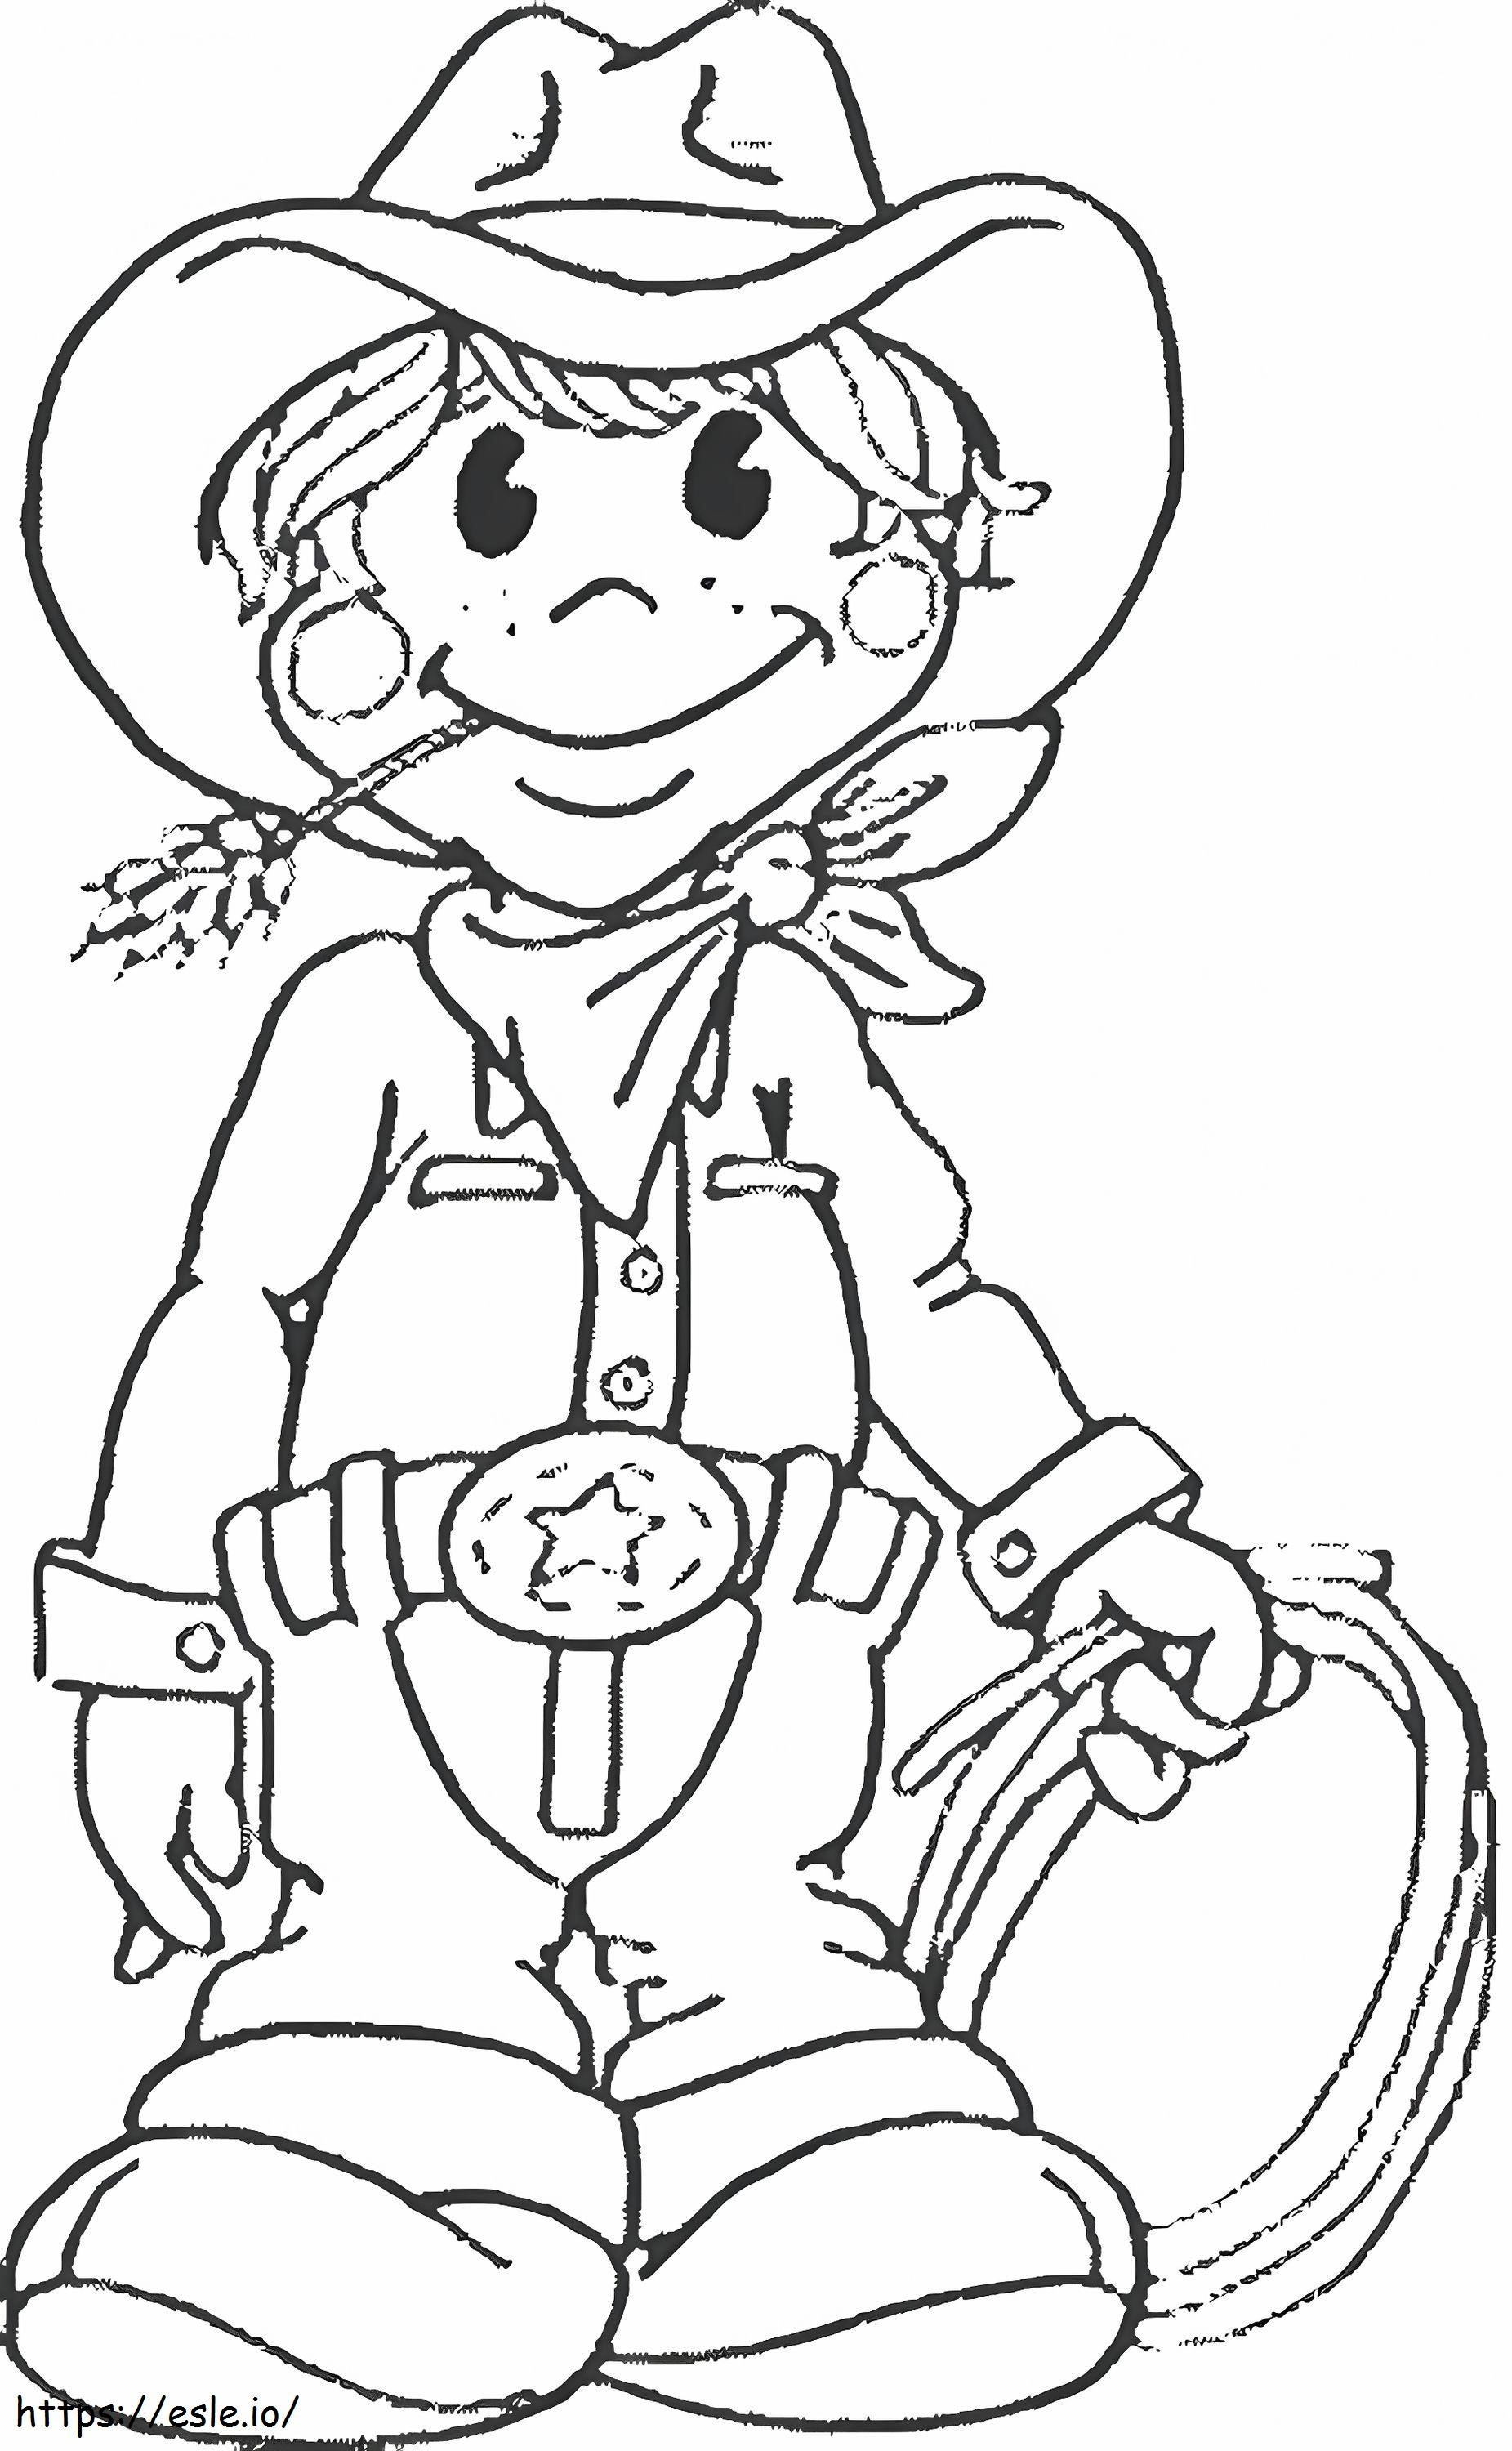 Cowboy-Zeichnung ausmalbilder